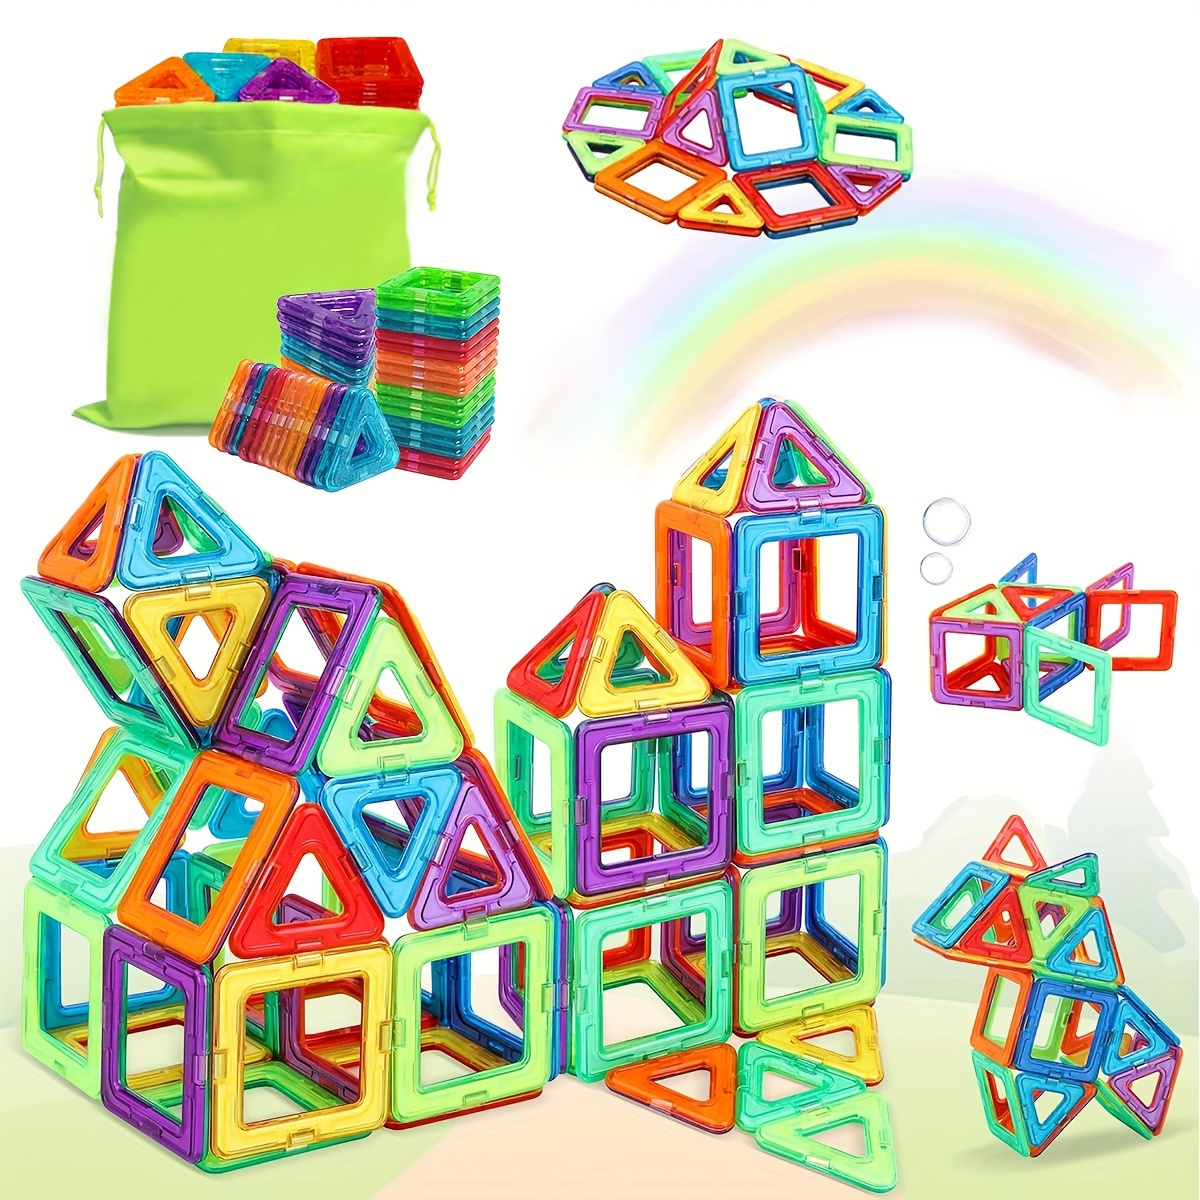 Conjunto de bloques magnéticos de gran tamaño para construir, juguete educativo para niños, regalo de Navidad/Halloween/Día de Acción de Gracias, regalo de Pascua